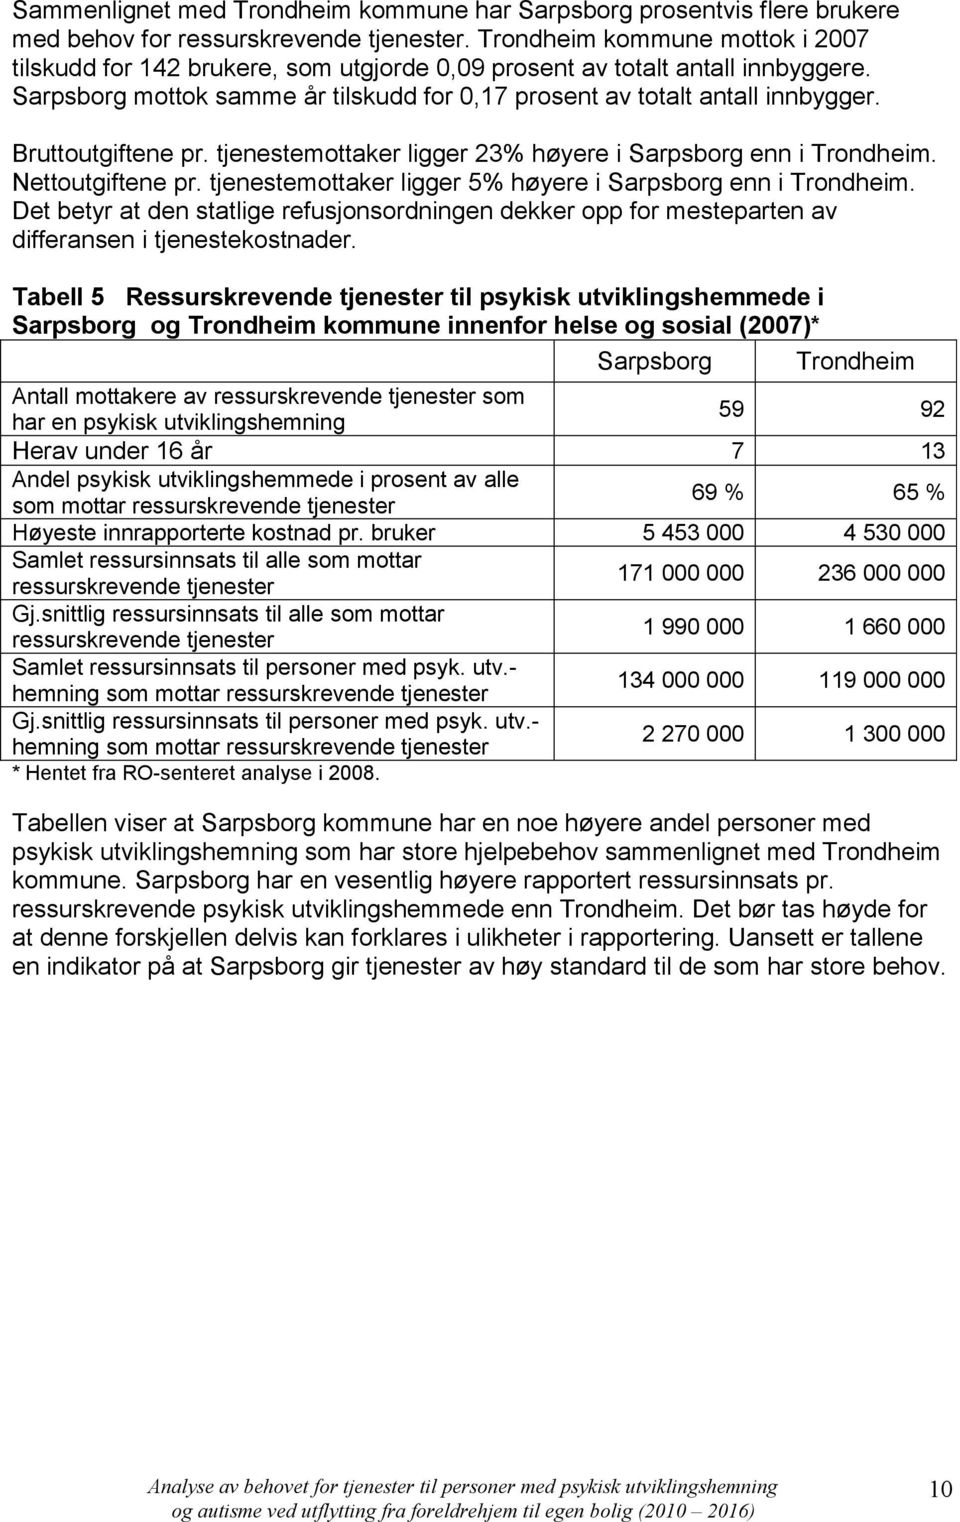 Bruttoutgiftene pr. tjenestemottaker ligger 23% høyere i Sarpsborg enn i Trondheim. Nettoutgiftene pr. tjenestemottaker ligger 5% høyere i Sarpsborg enn i Trondheim.